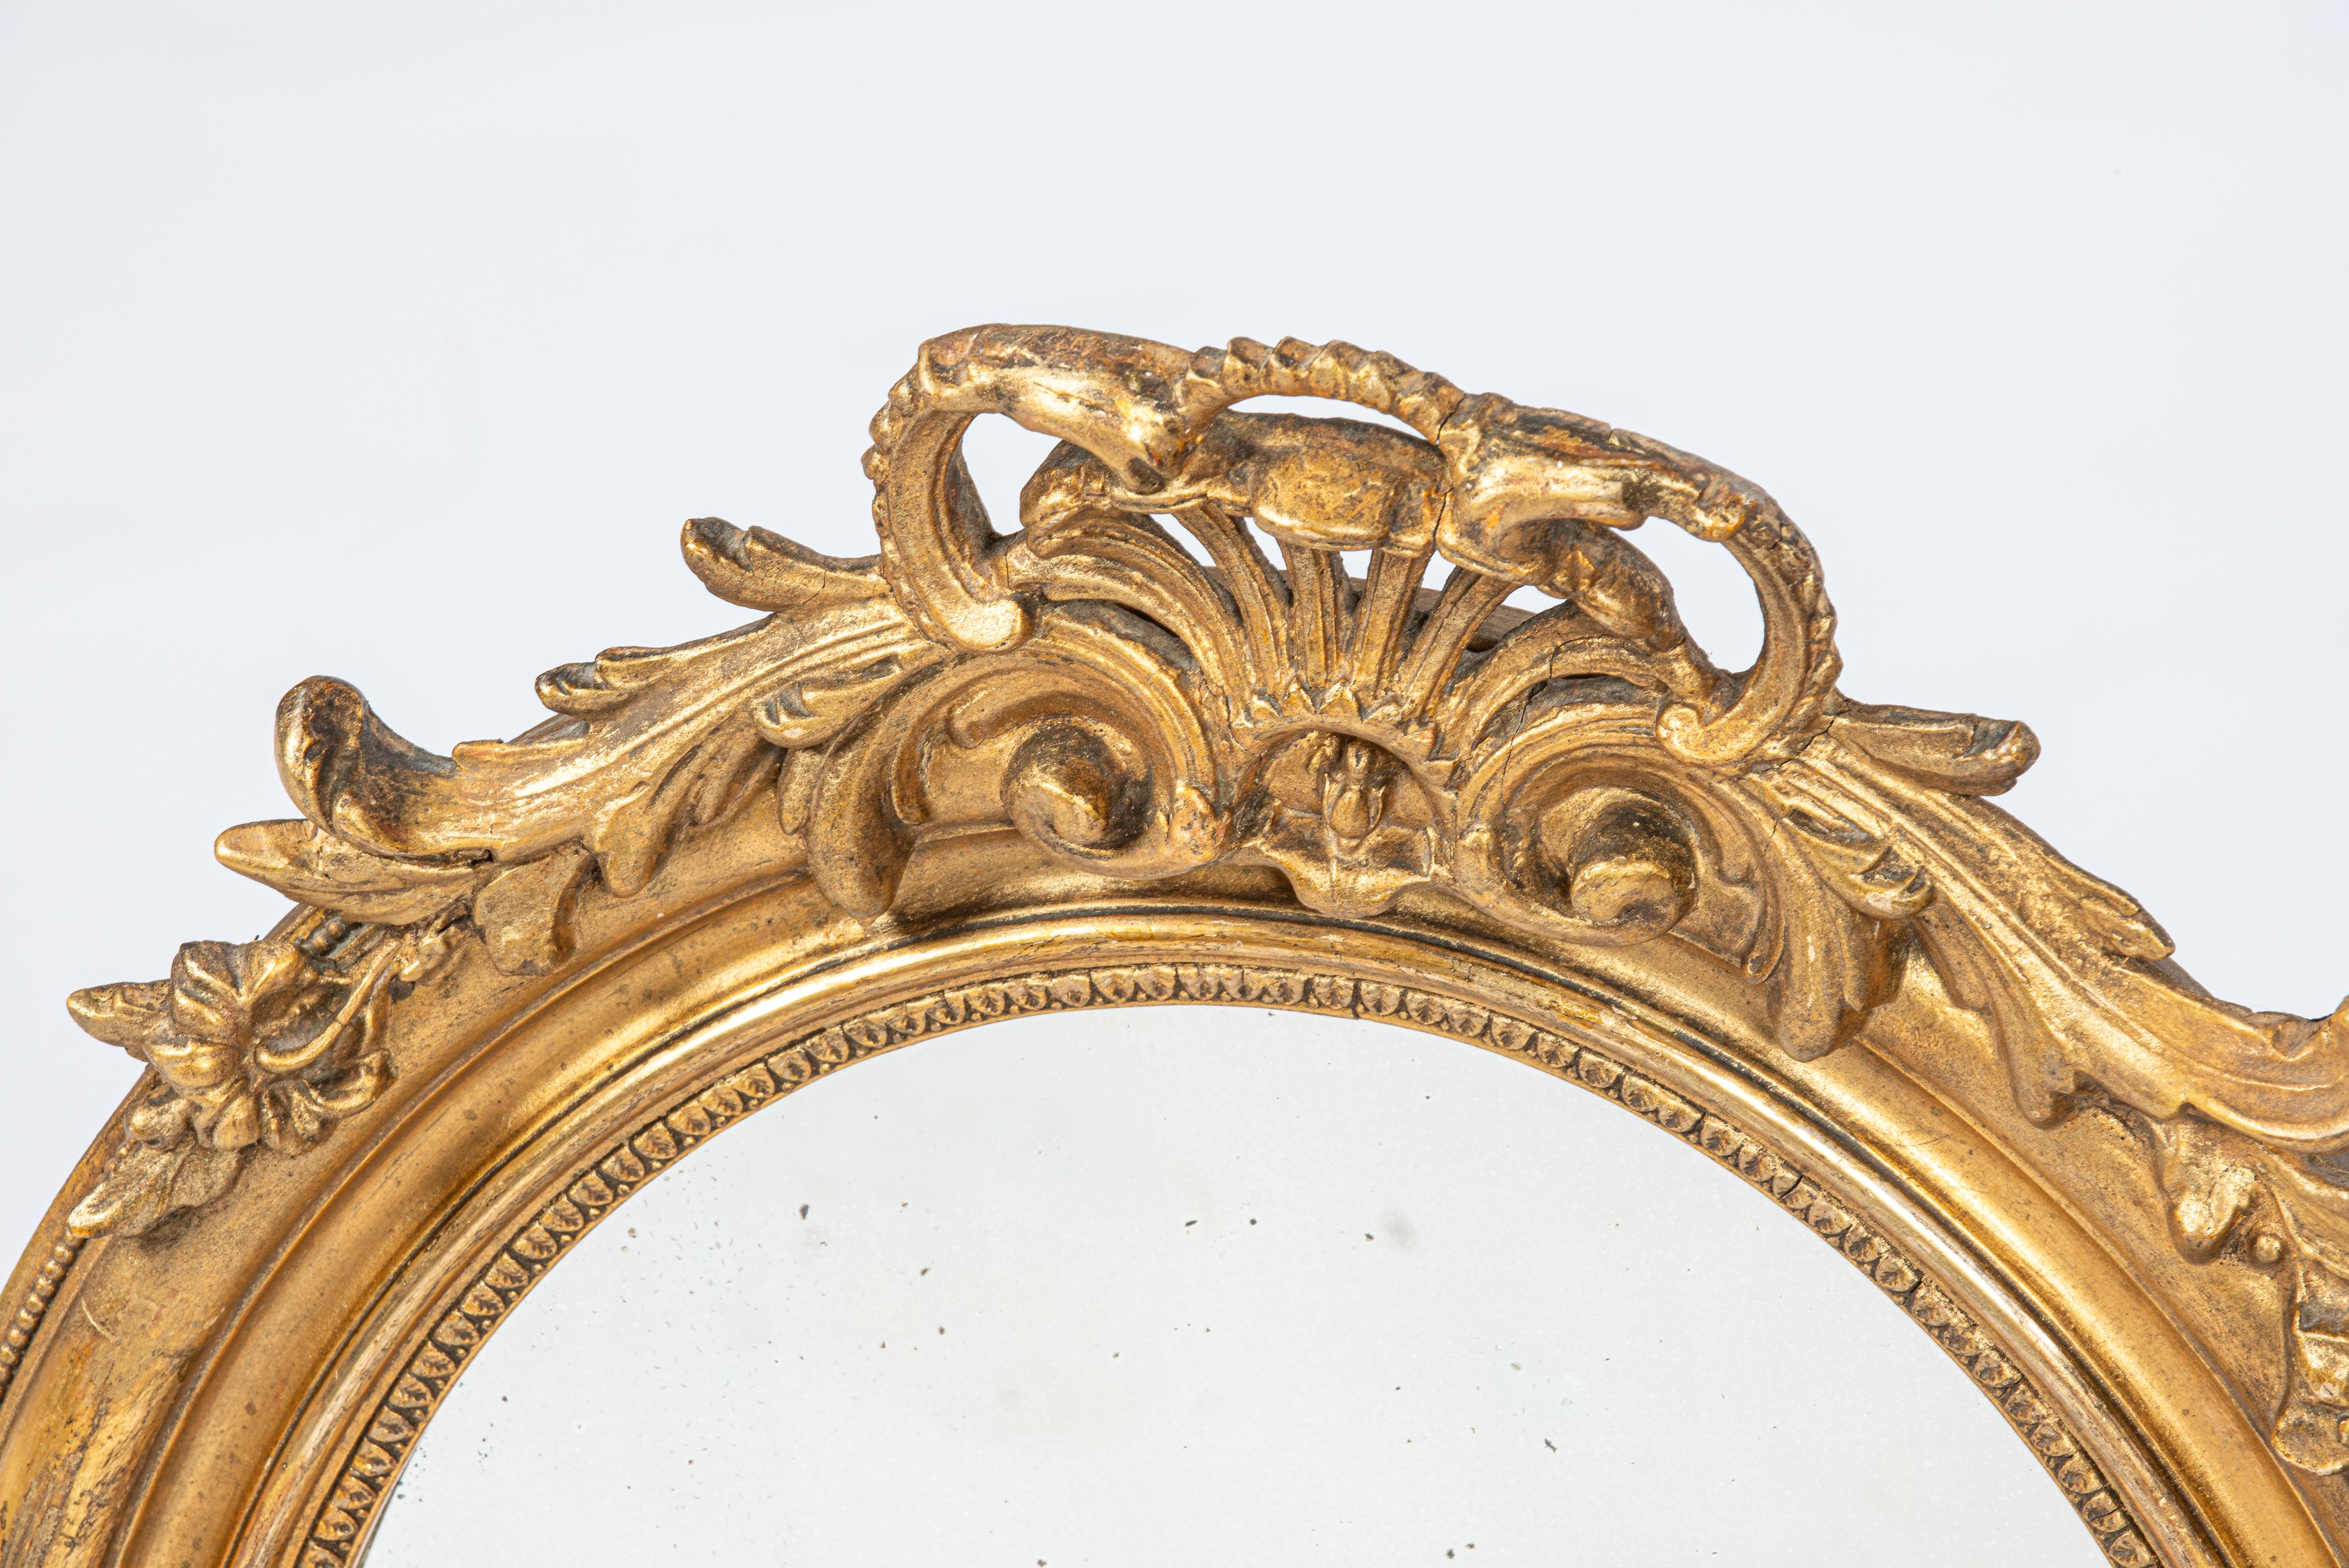 Hier wird ein schöner kleiner ovaler Spiegel angeboten, der in Frankreich in der zweiten Hälfte des 19. Jahrhunderts, um 1870, hergestellt wurde. Der Spiegelrahmen besteht aus glattem, mit Gesso beschichtetem Kiefernholz. Es ist mit reichen